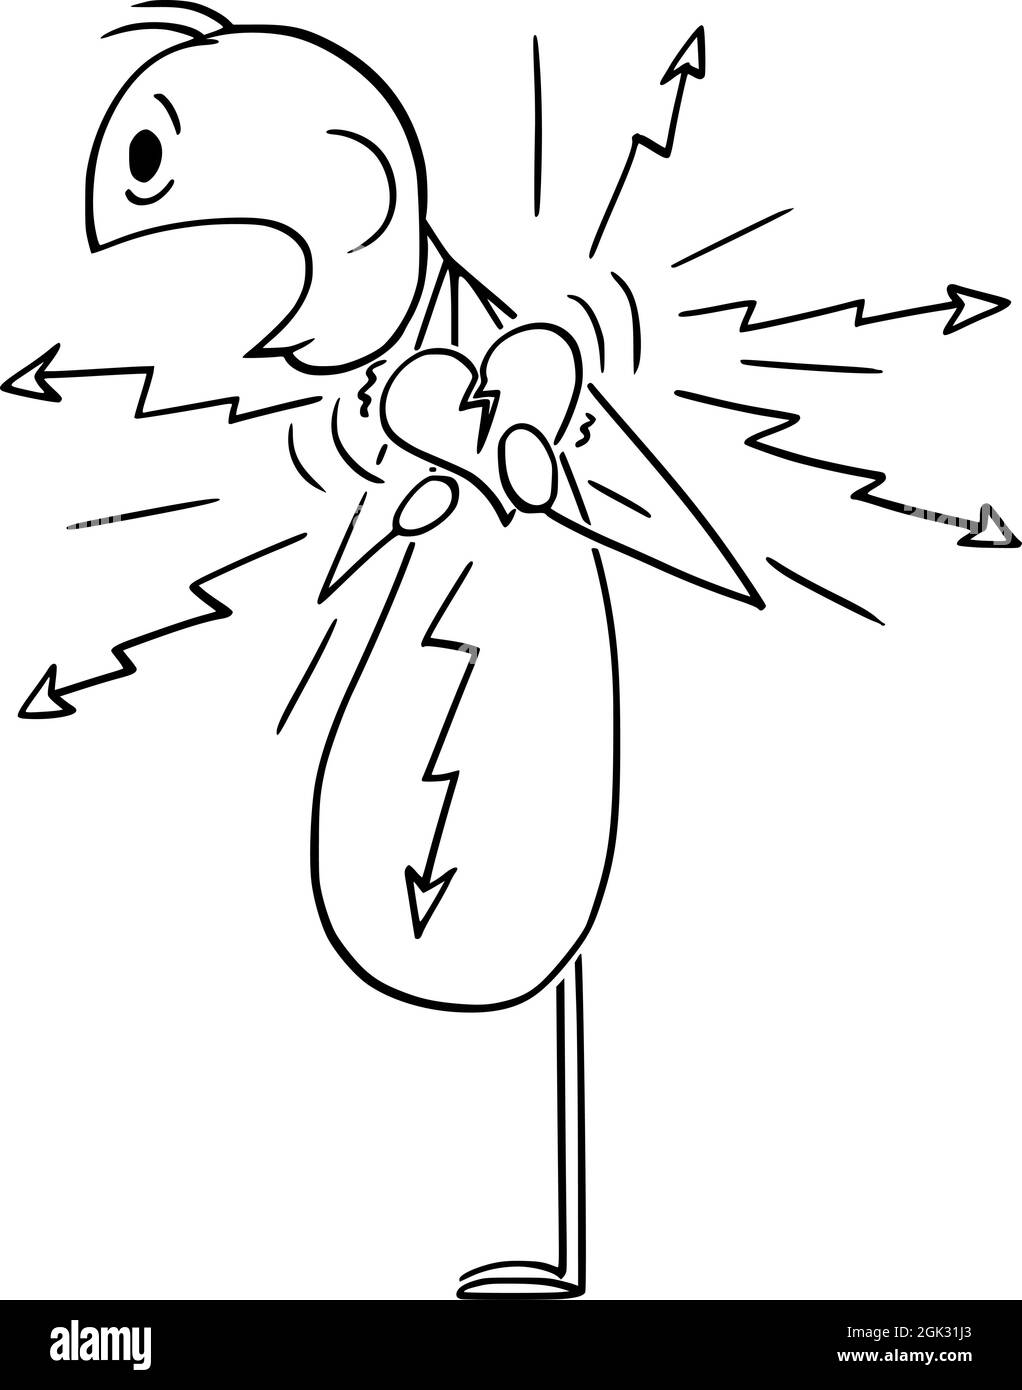 Personne en surpoids souffrant de douleur thoracique, ayant une crise cardiaque, Vector Cartoon Stick Figure Illustration Illustration de Vecteur